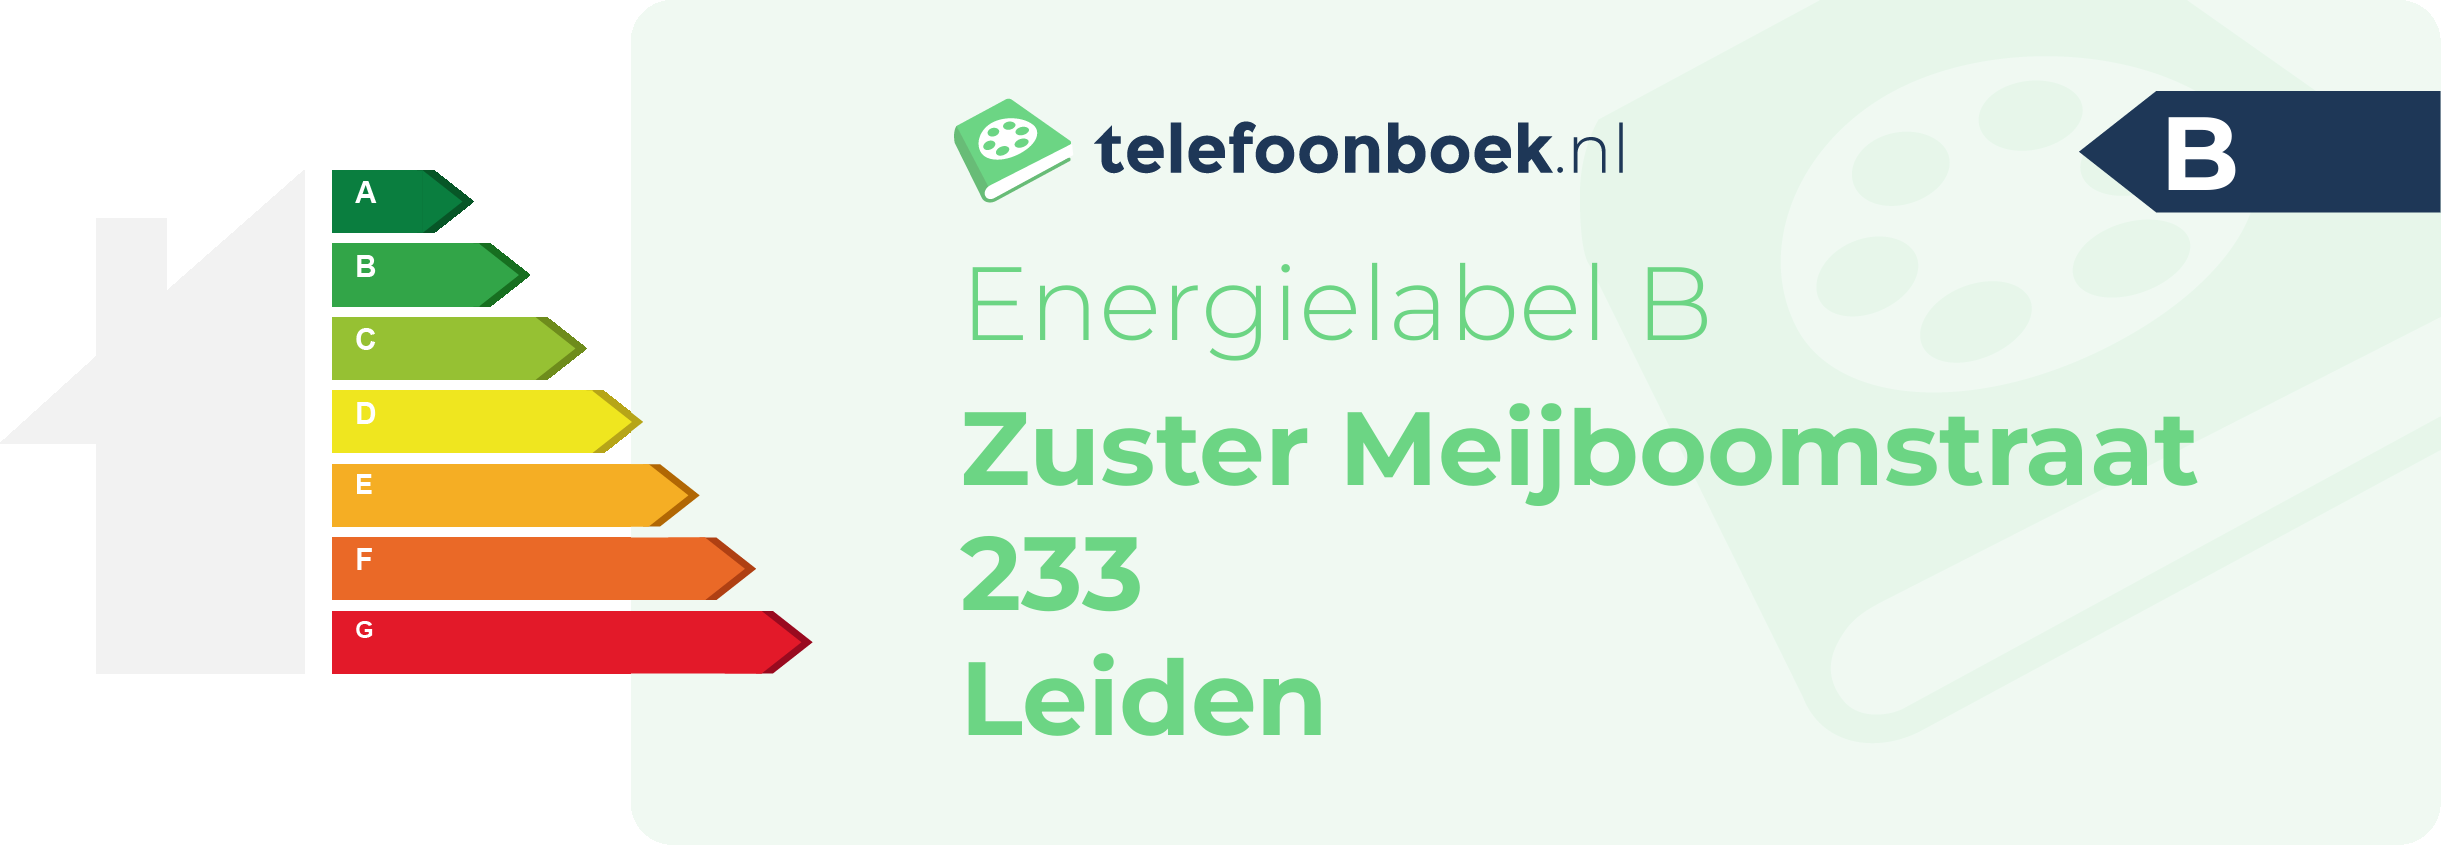 Energielabel Zuster Meijboomstraat 233 Leiden